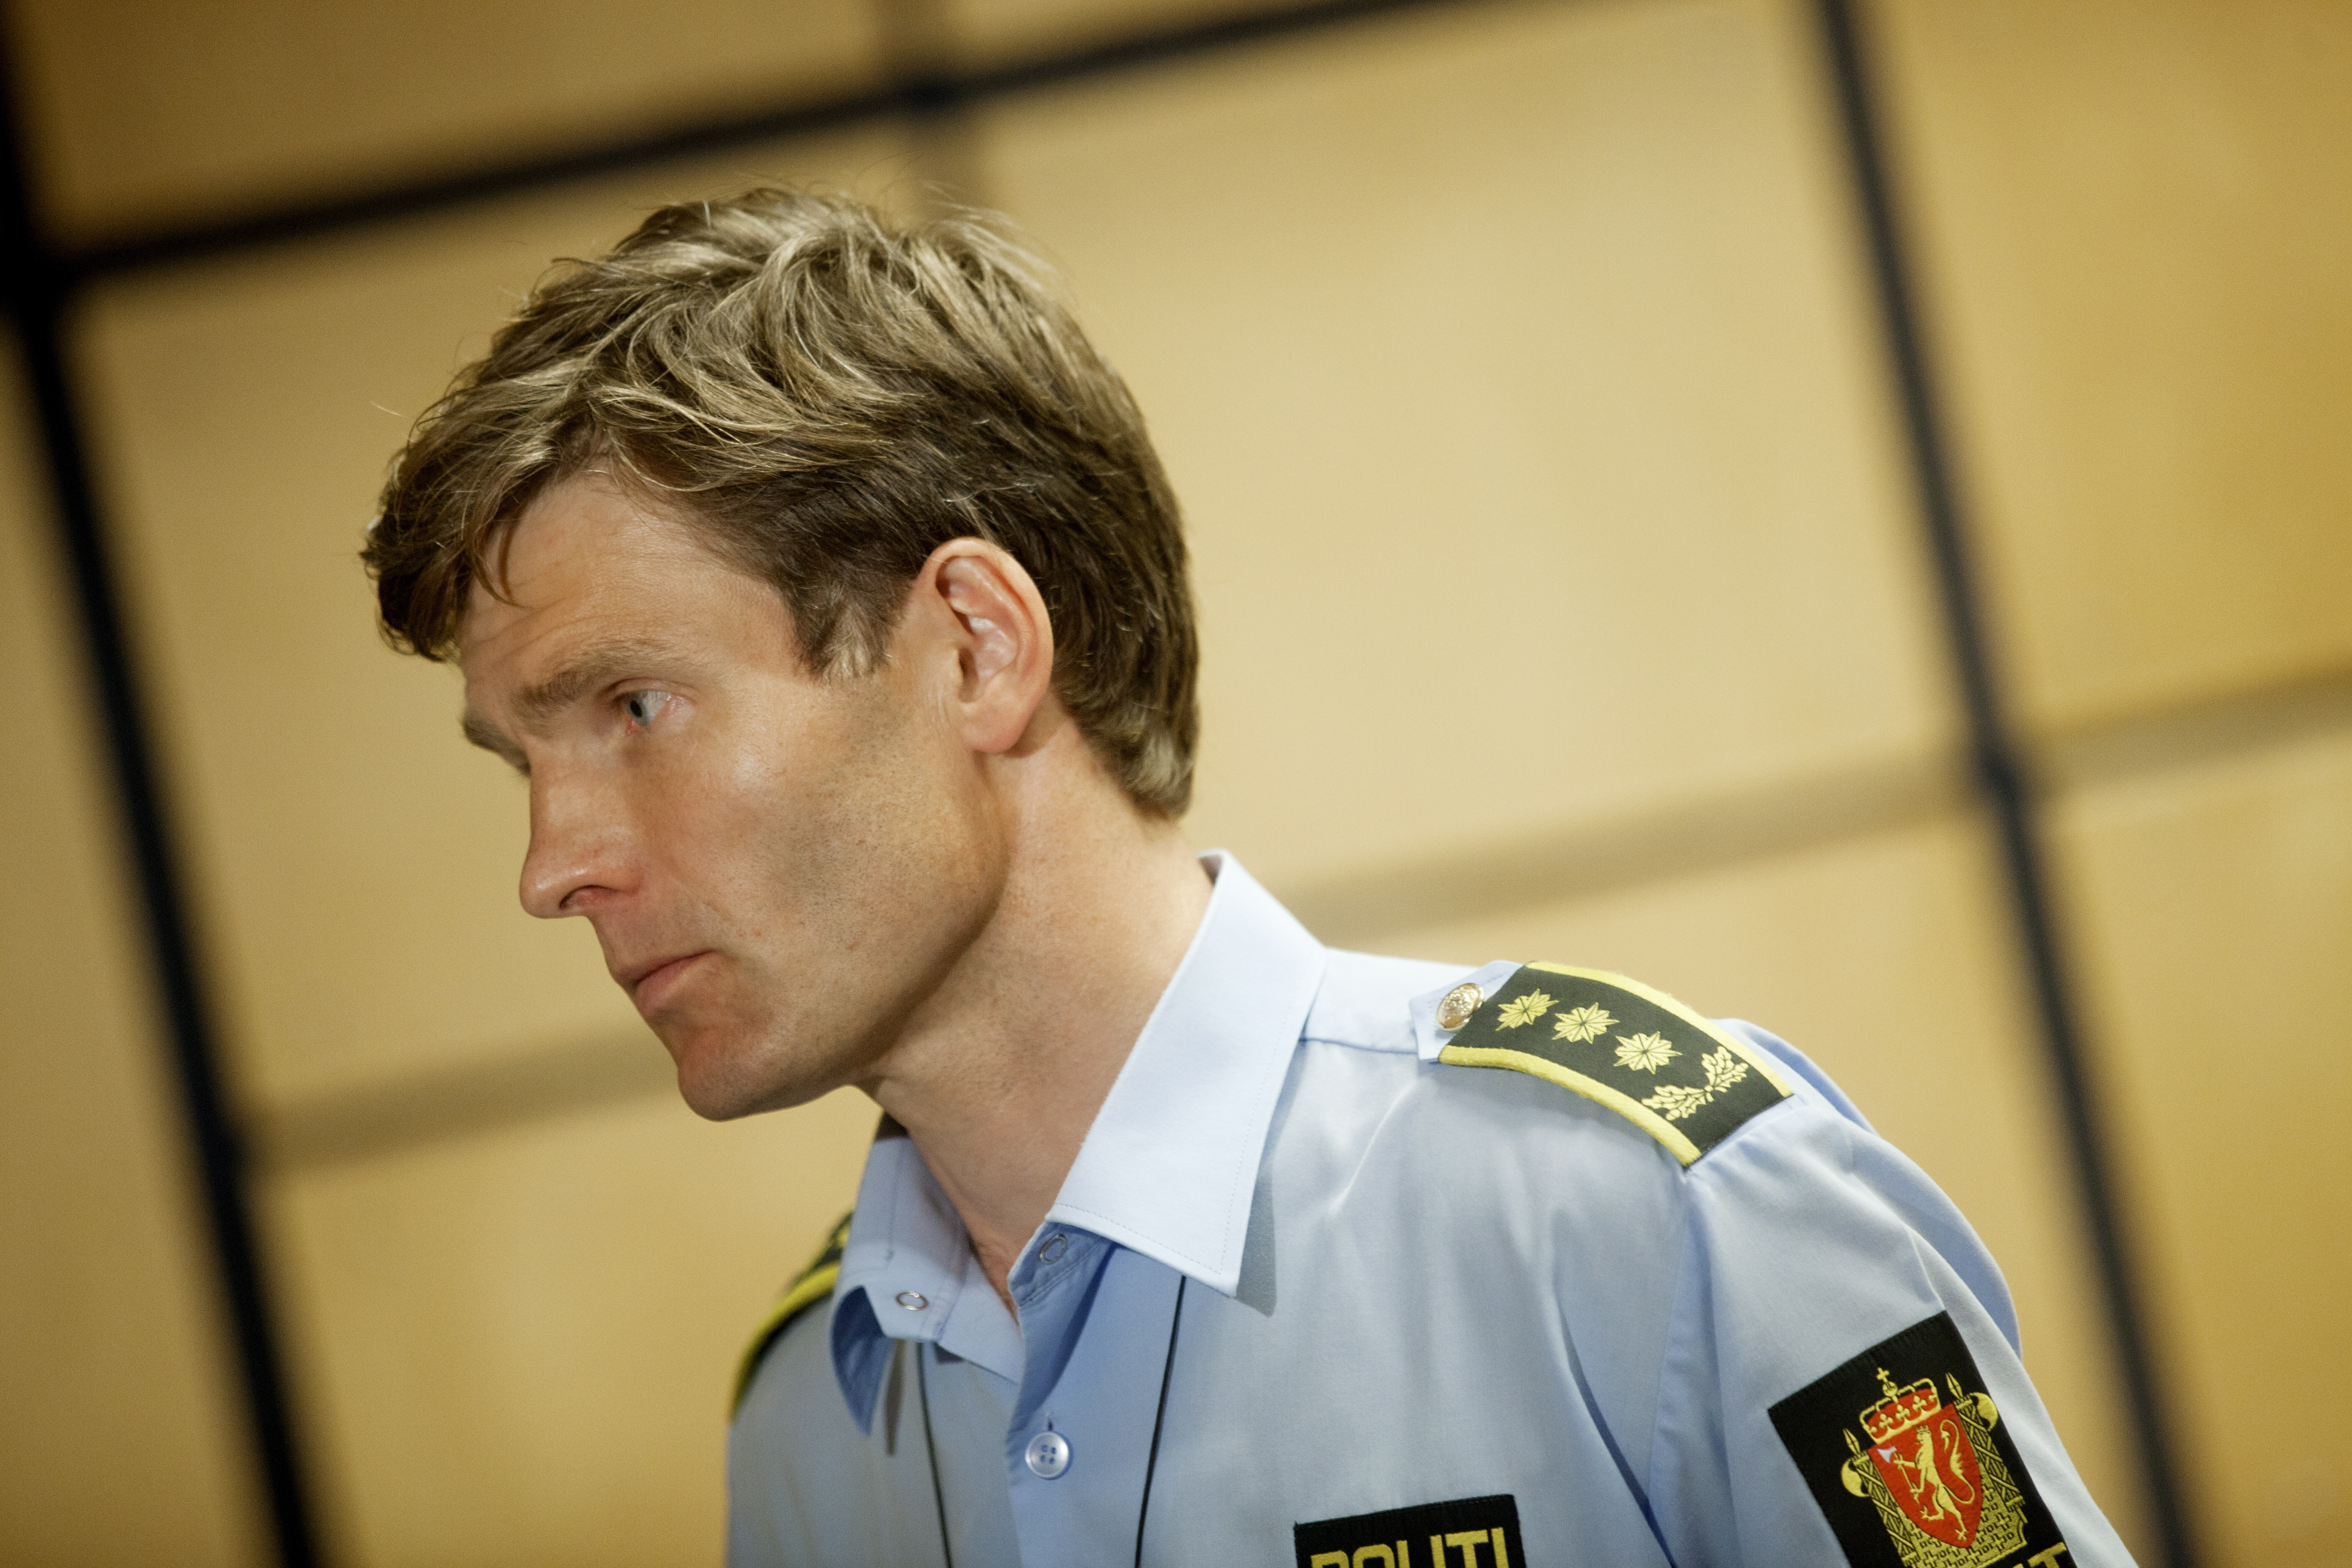 För att hindra att Breivik skulle skada sig själv, någon annan eller fly spändes han fast med en sele under vallningen.
Rekonstruktionen tog åtta timmar, berättar åklagare Hjort Kraby.